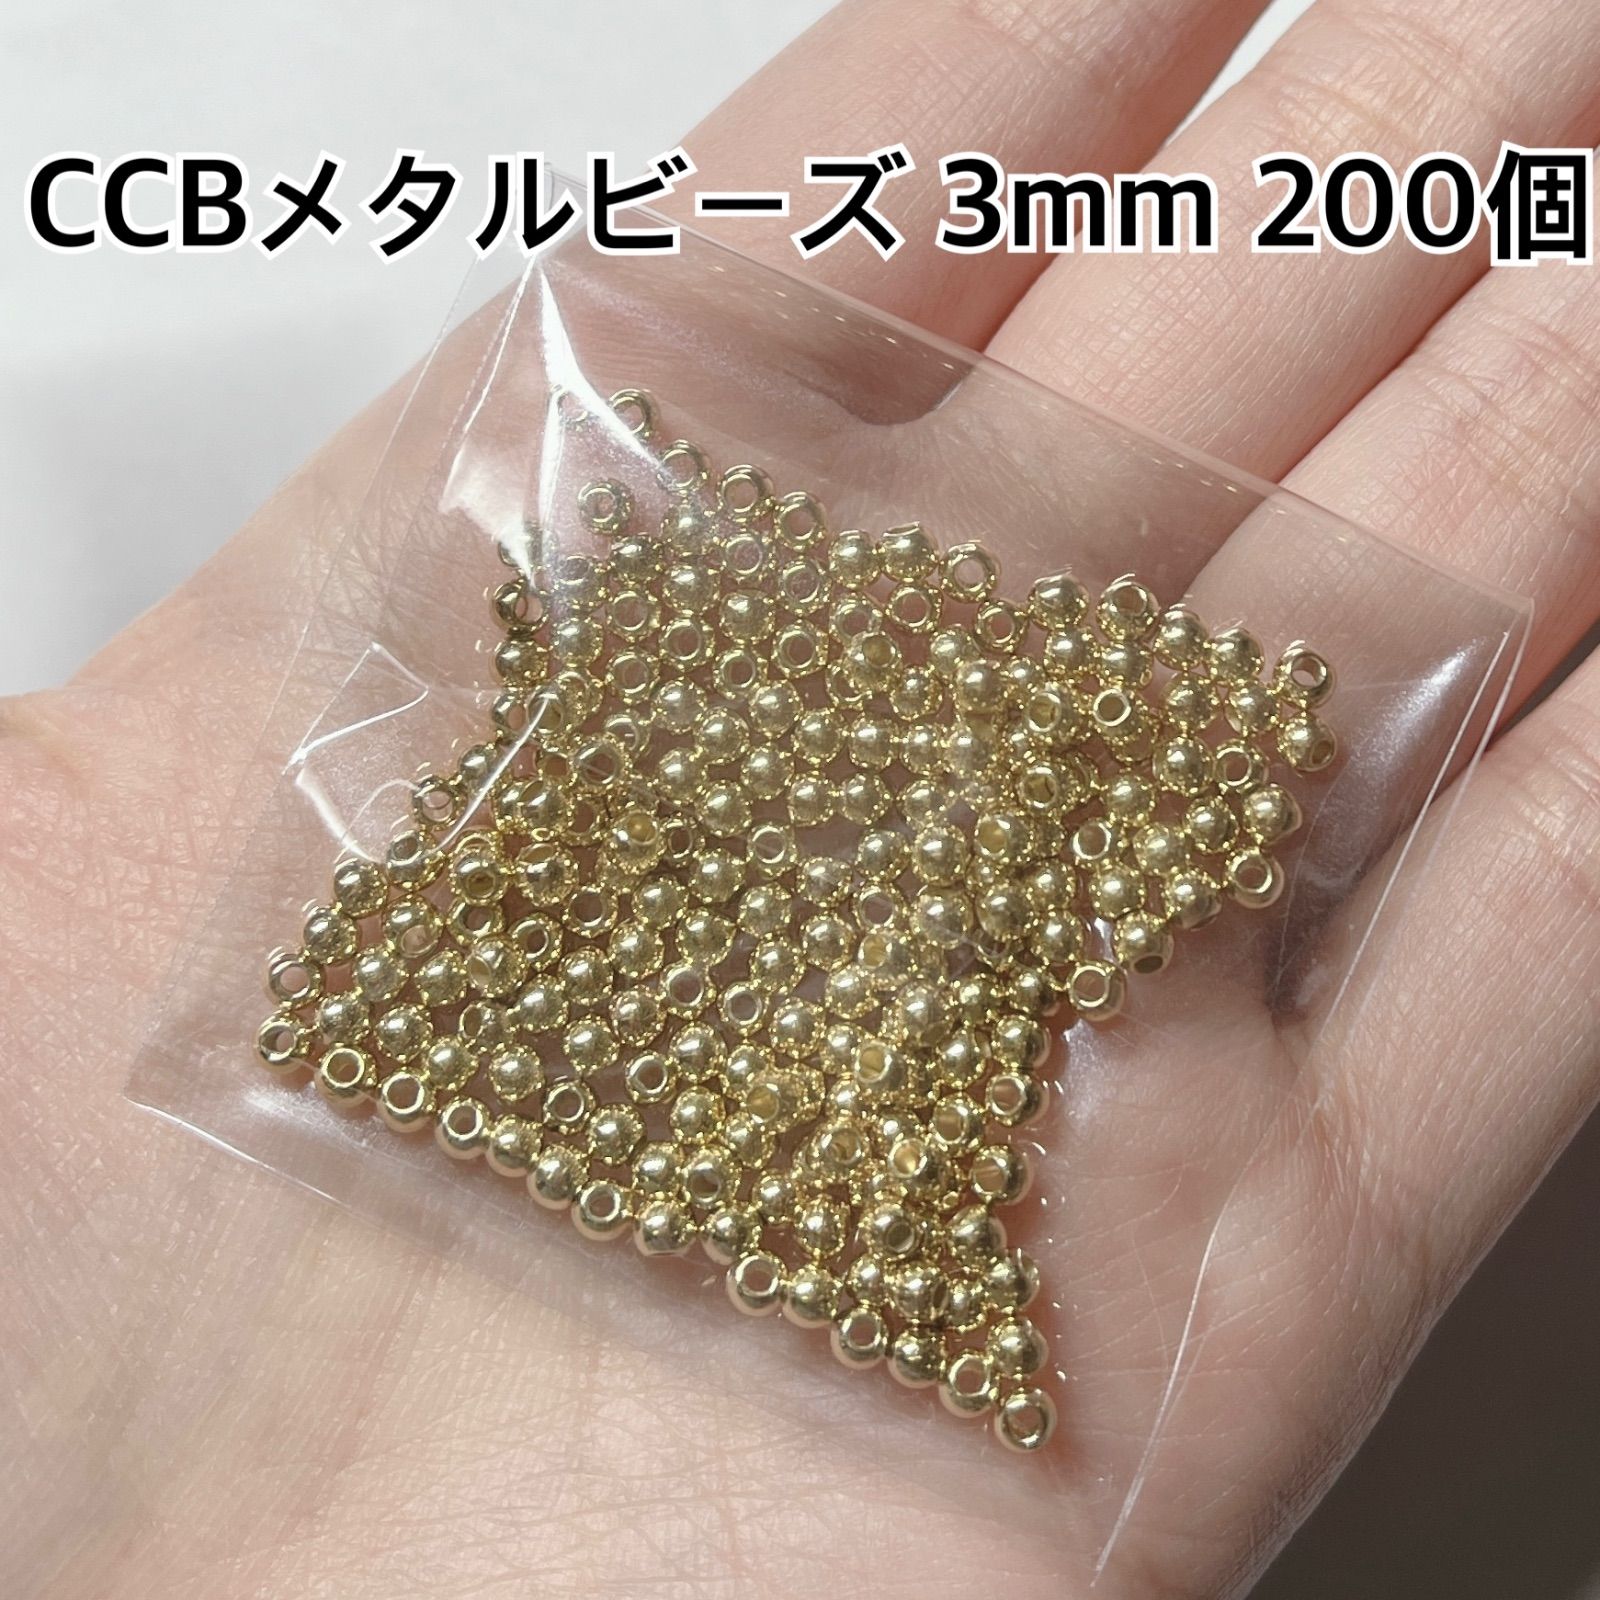 CCB メタル ビーズ 3mm ゴールド ハンドメイド パーツ 材料 ピアス